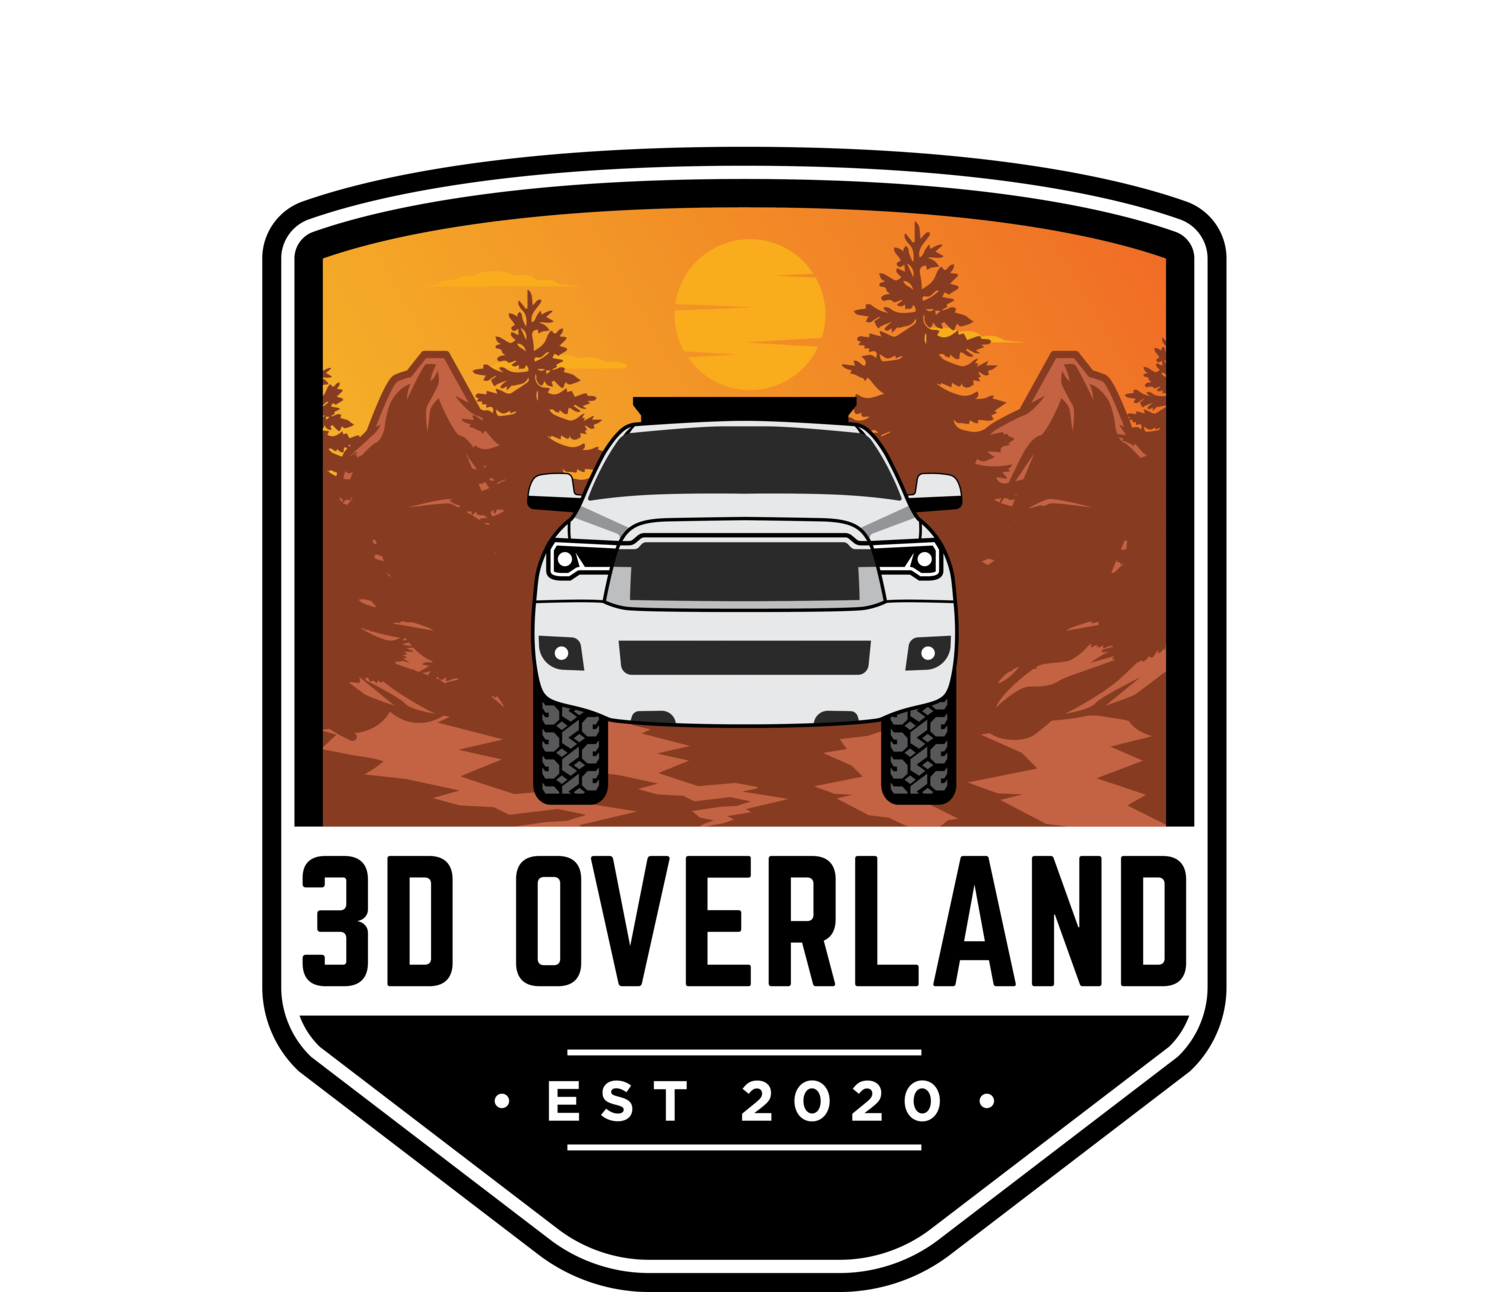 3D Overland